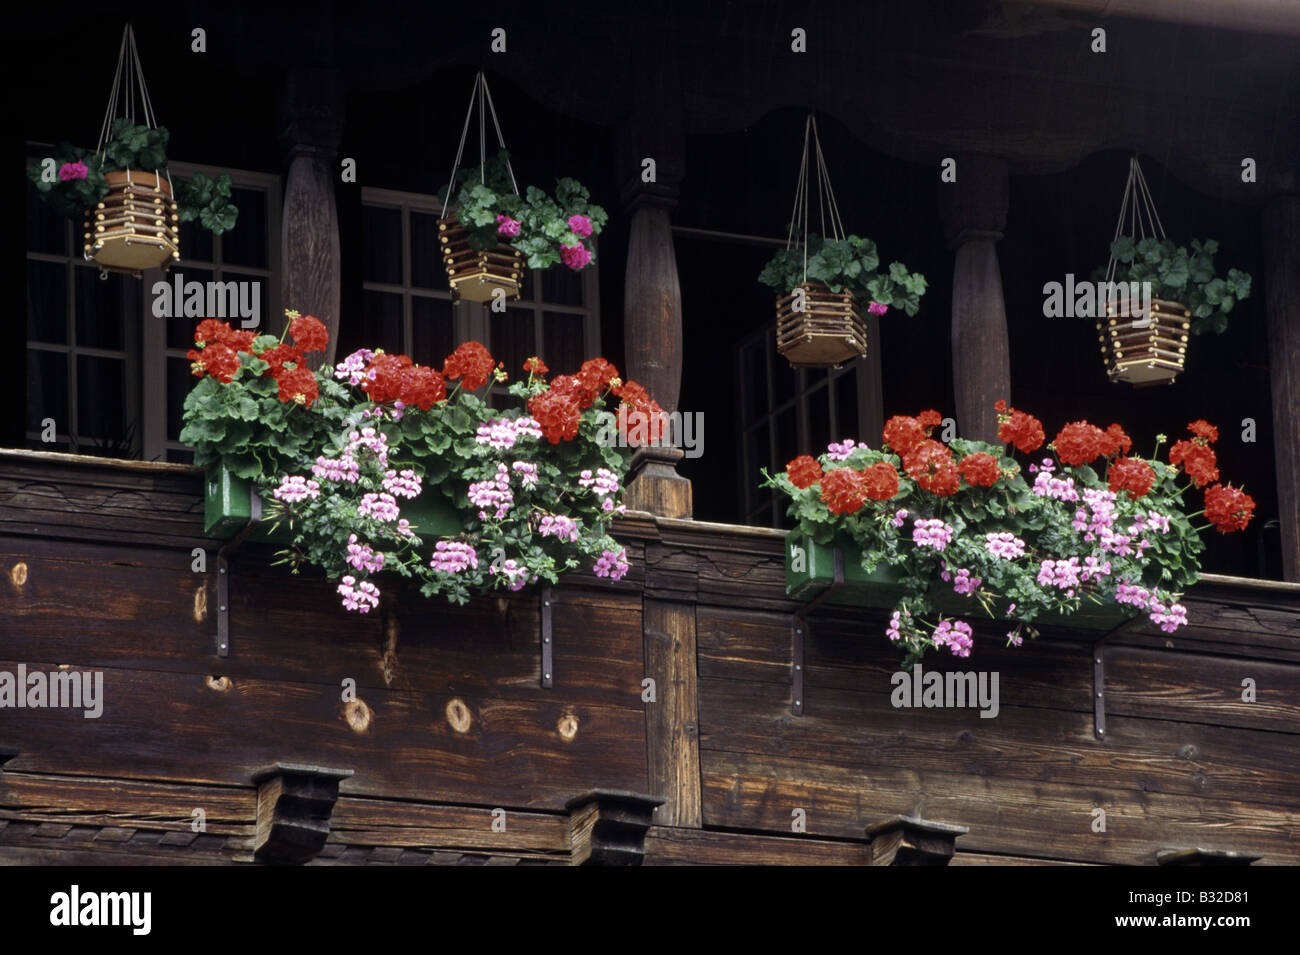 Traditionelles Haus Holzbalkone Balkonkästen Blumen Geranien rosa rot  BRIENZ Berner OBERLAND Schweiz Stockfotografie - Alamy